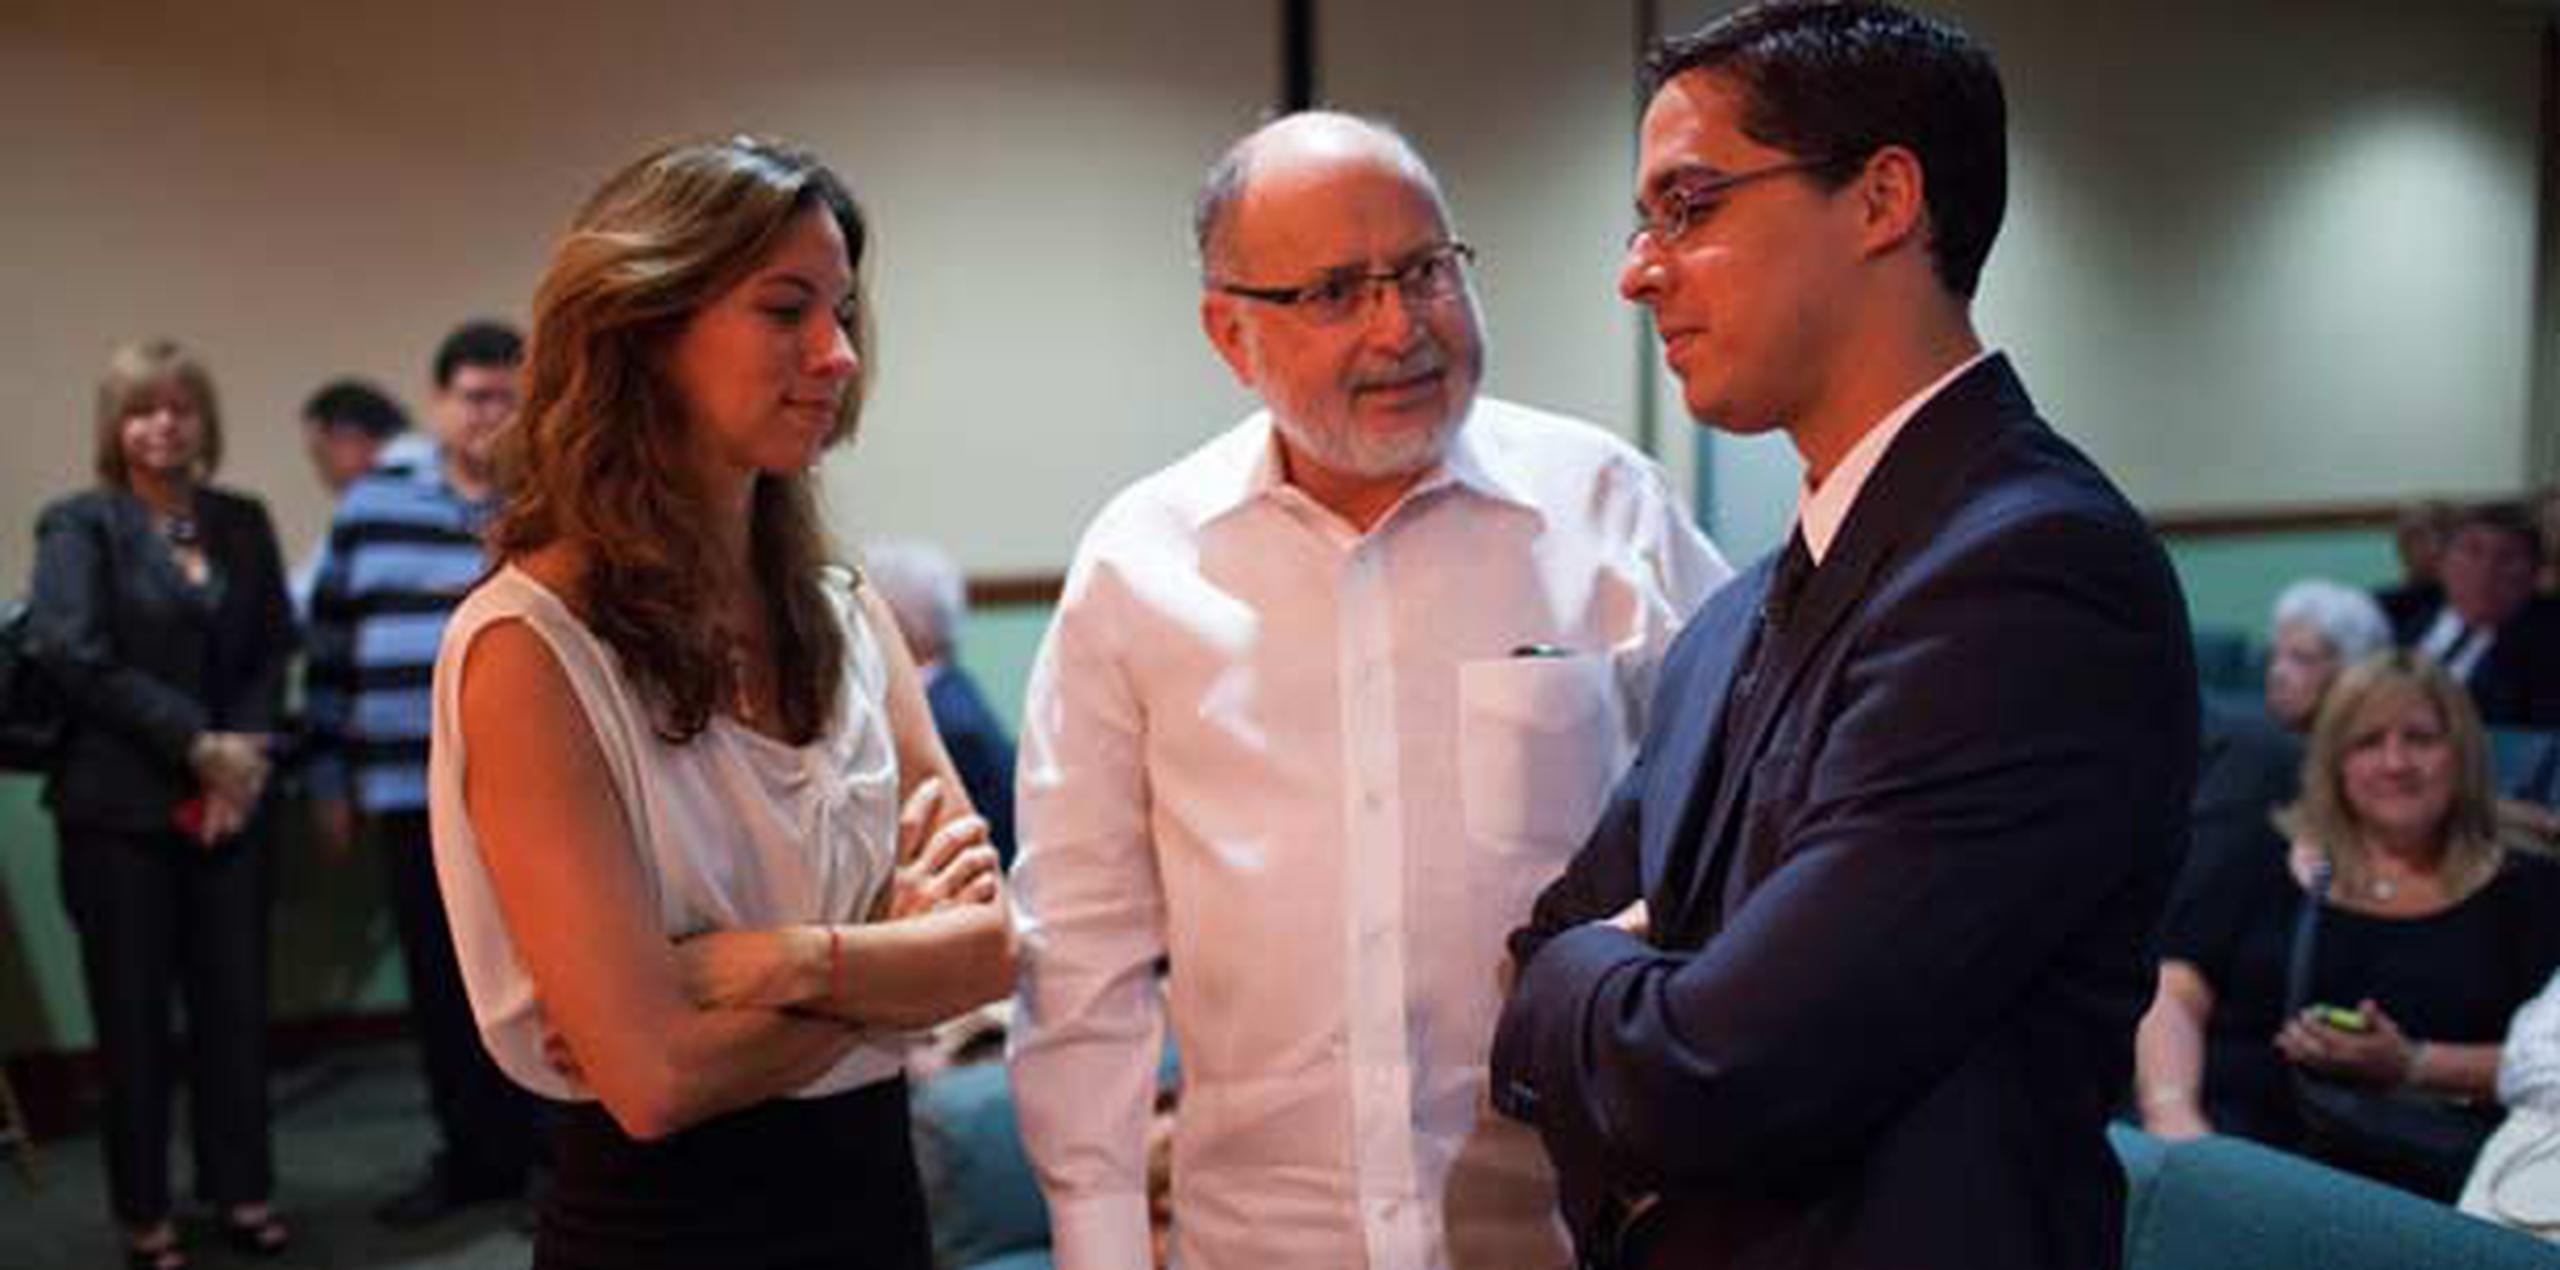 Rebeca Noriega Costas y su hermano Javier conversan con el secretario de Justicia, Luis Sánchez Betances. (GFR Media / Dennis M. Rivera Pichardo)